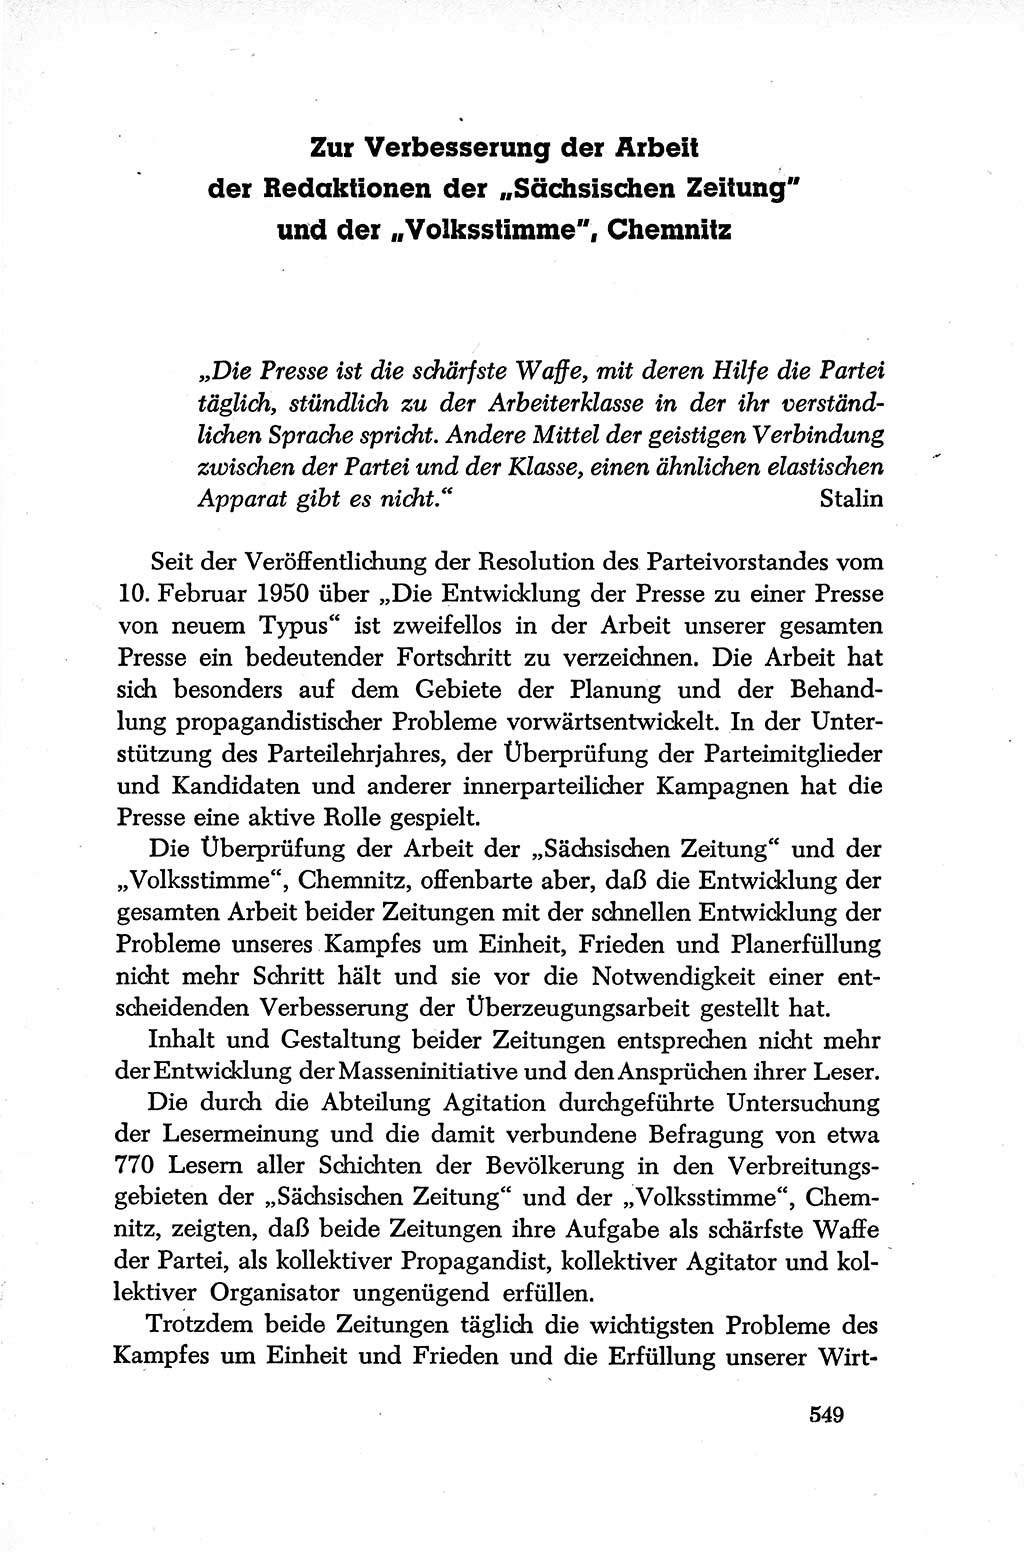 Dokumente der Sozialistischen Einheitspartei Deutschlands (SED) [Deutsche Demokratische Republik (DDR)] 1952-1953, Seite 549 (Dok. SED DDR 1952-1953, S. 549)